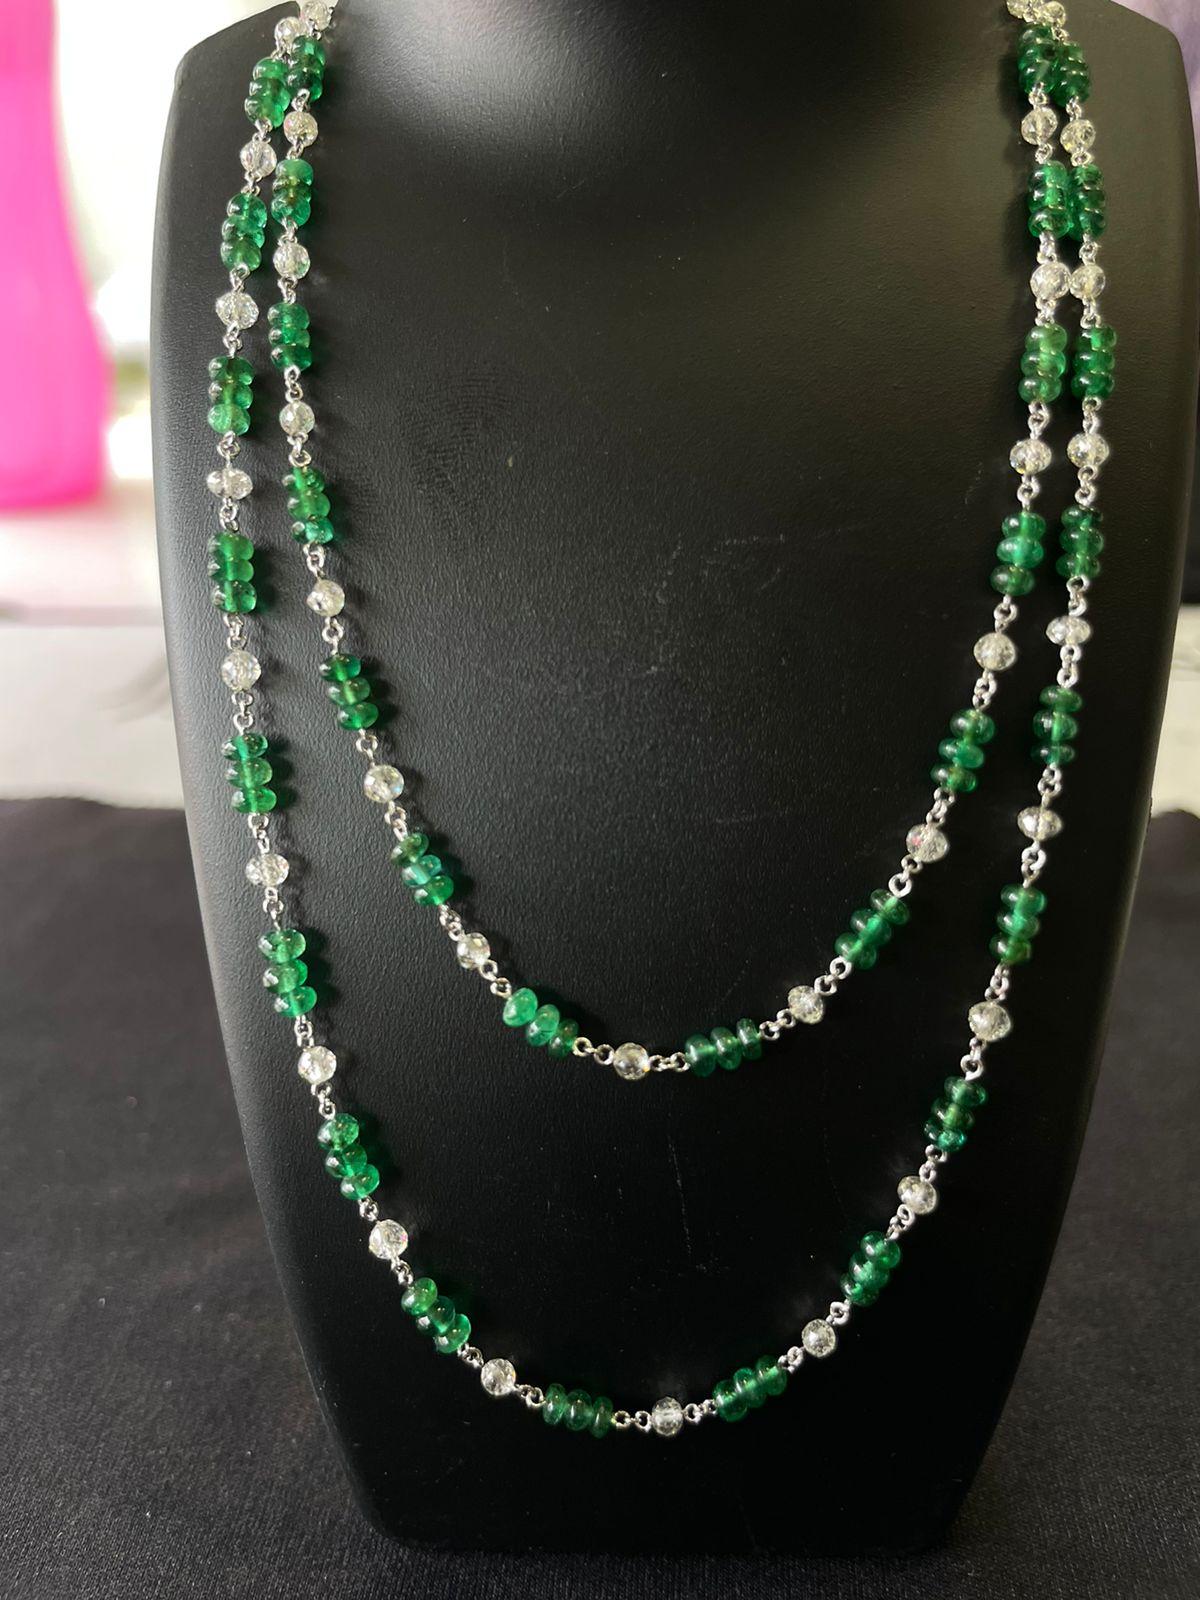 PANIM Collier perles de diamant et émeraude en or blanc 18k

Des perles de diamant et des émeraudes vertes naturelles sont utilisées pour embellir un collier délicat ,tout s'enchaîne avec fluidité, leurs teintes se renforçant mutuellement. Parfait